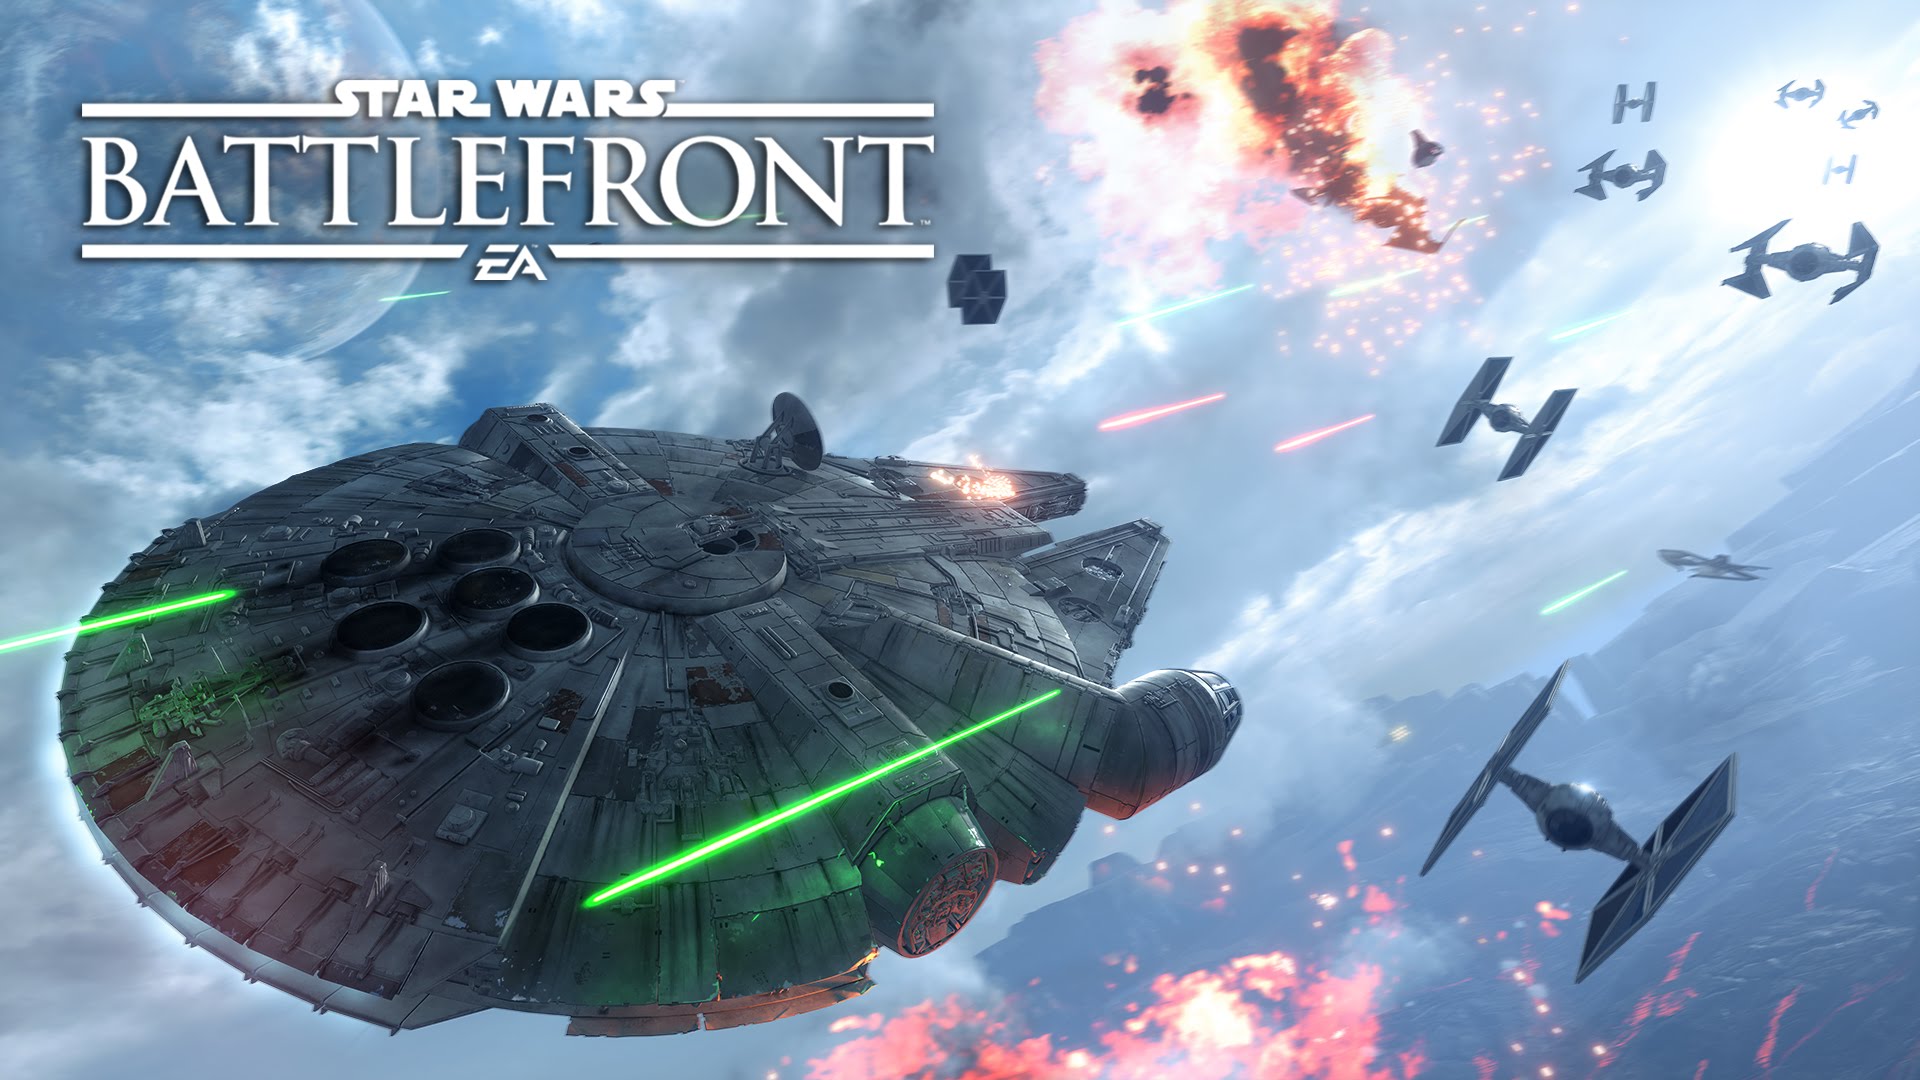 EA confirma sequência de Star Wars Battlefront com elementos dos novos filmes